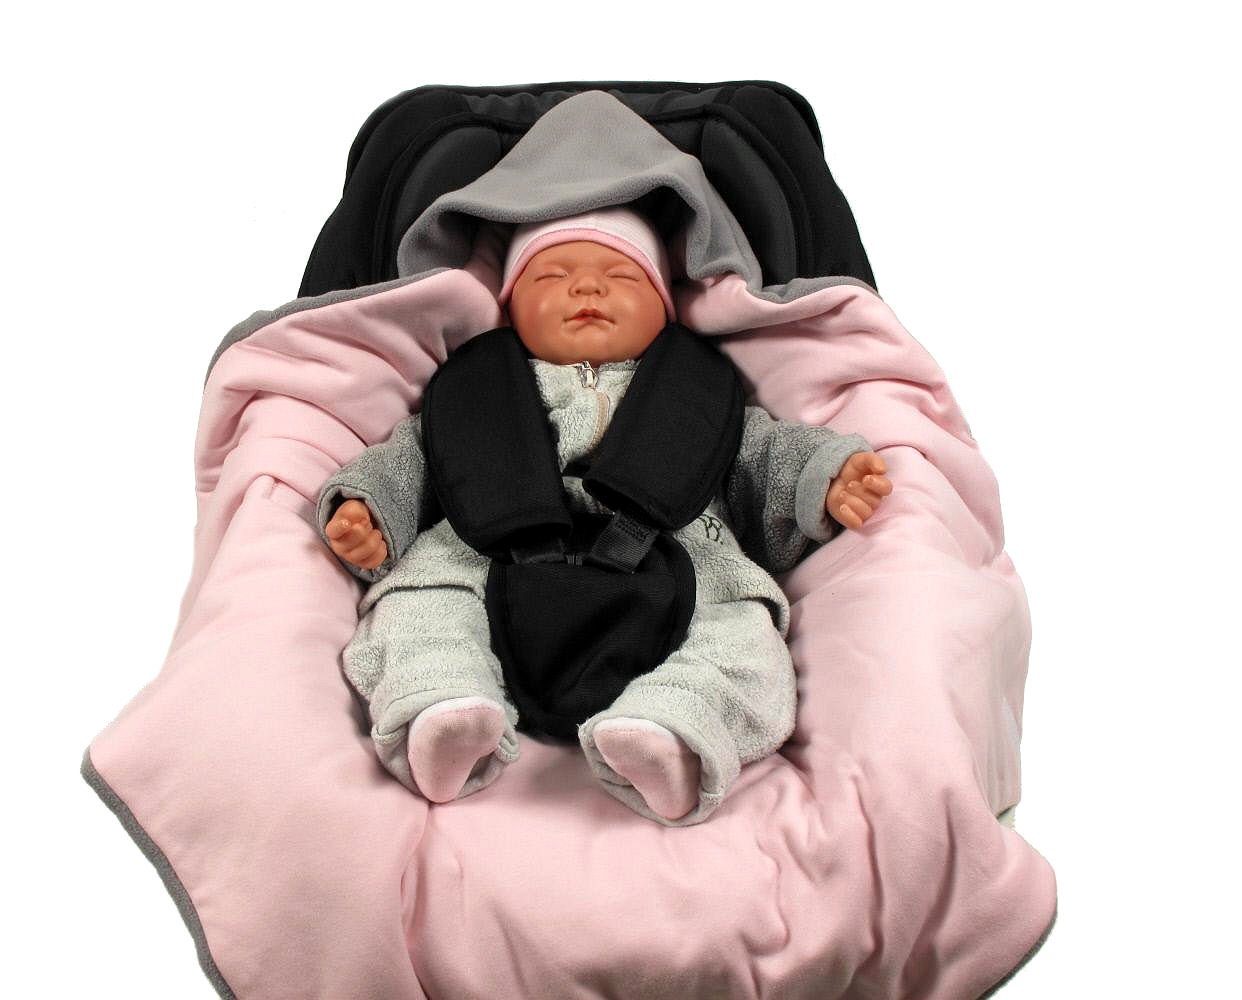 Babyschale grau/rosa Punkt HOBEA-Germany, für die für Winter, Babyschalenfußsack geeignet Babyschale 3 Einschlagdecke Fußsack